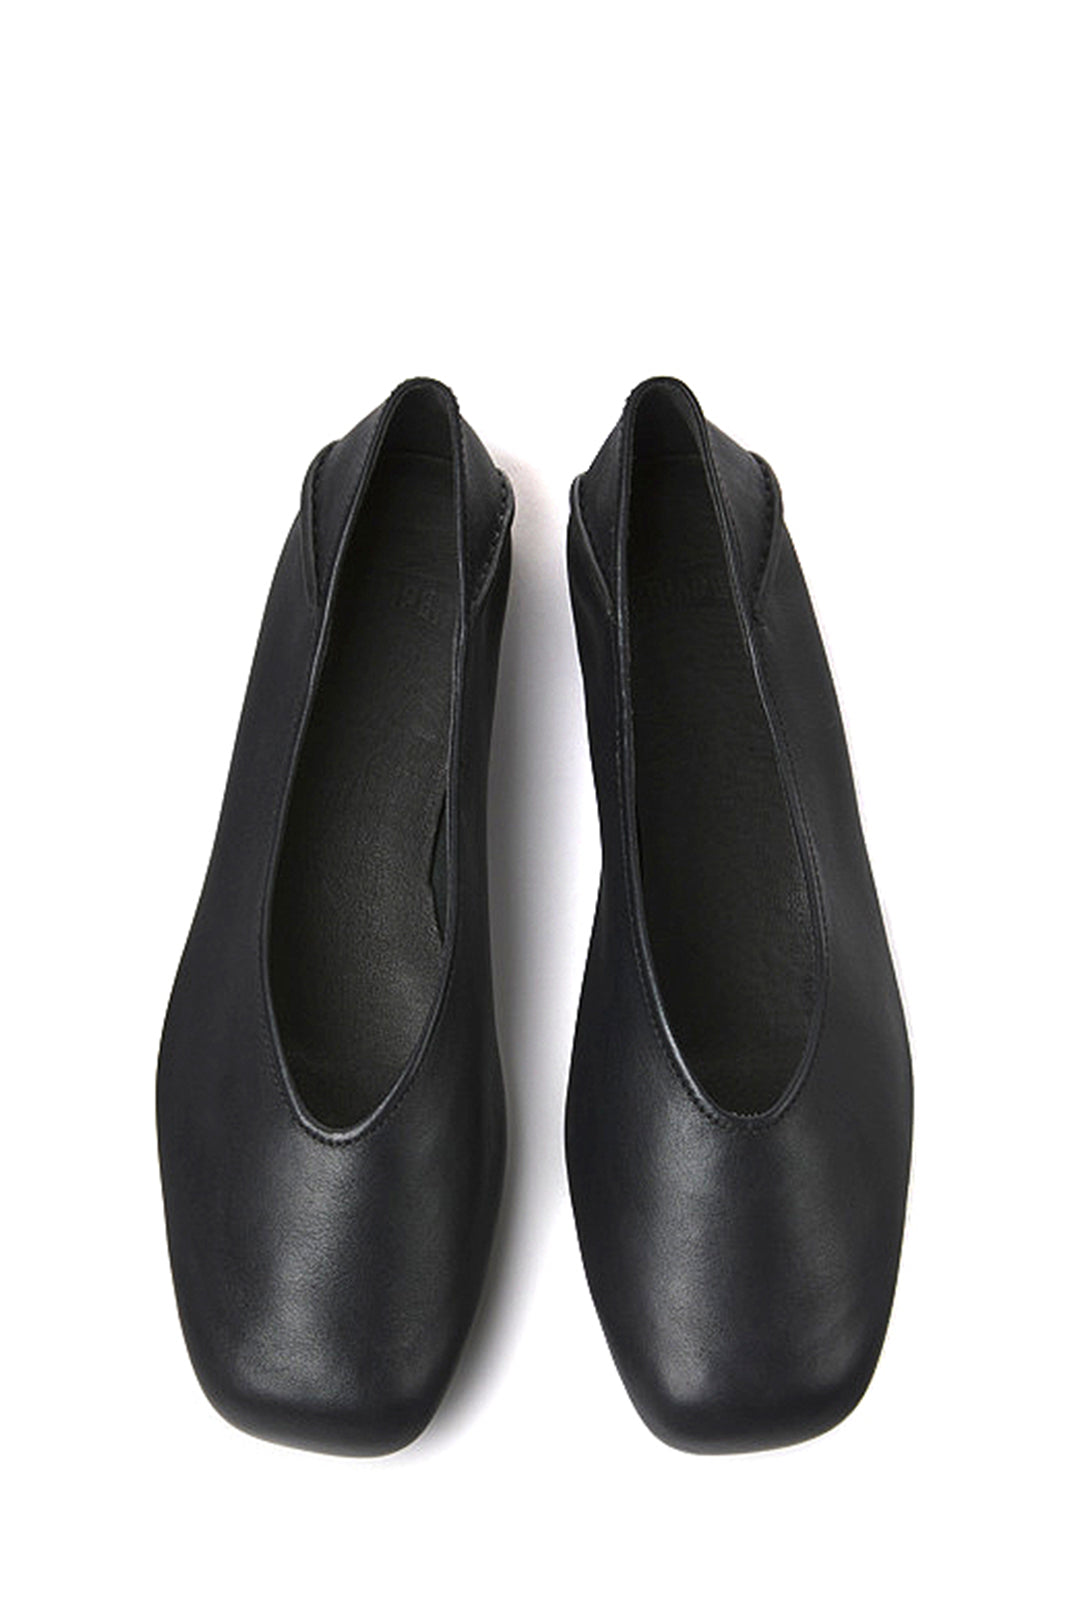 Camper Myra Ballet Shoes, Black - BACK IN STOCK! – SOOP SOOP